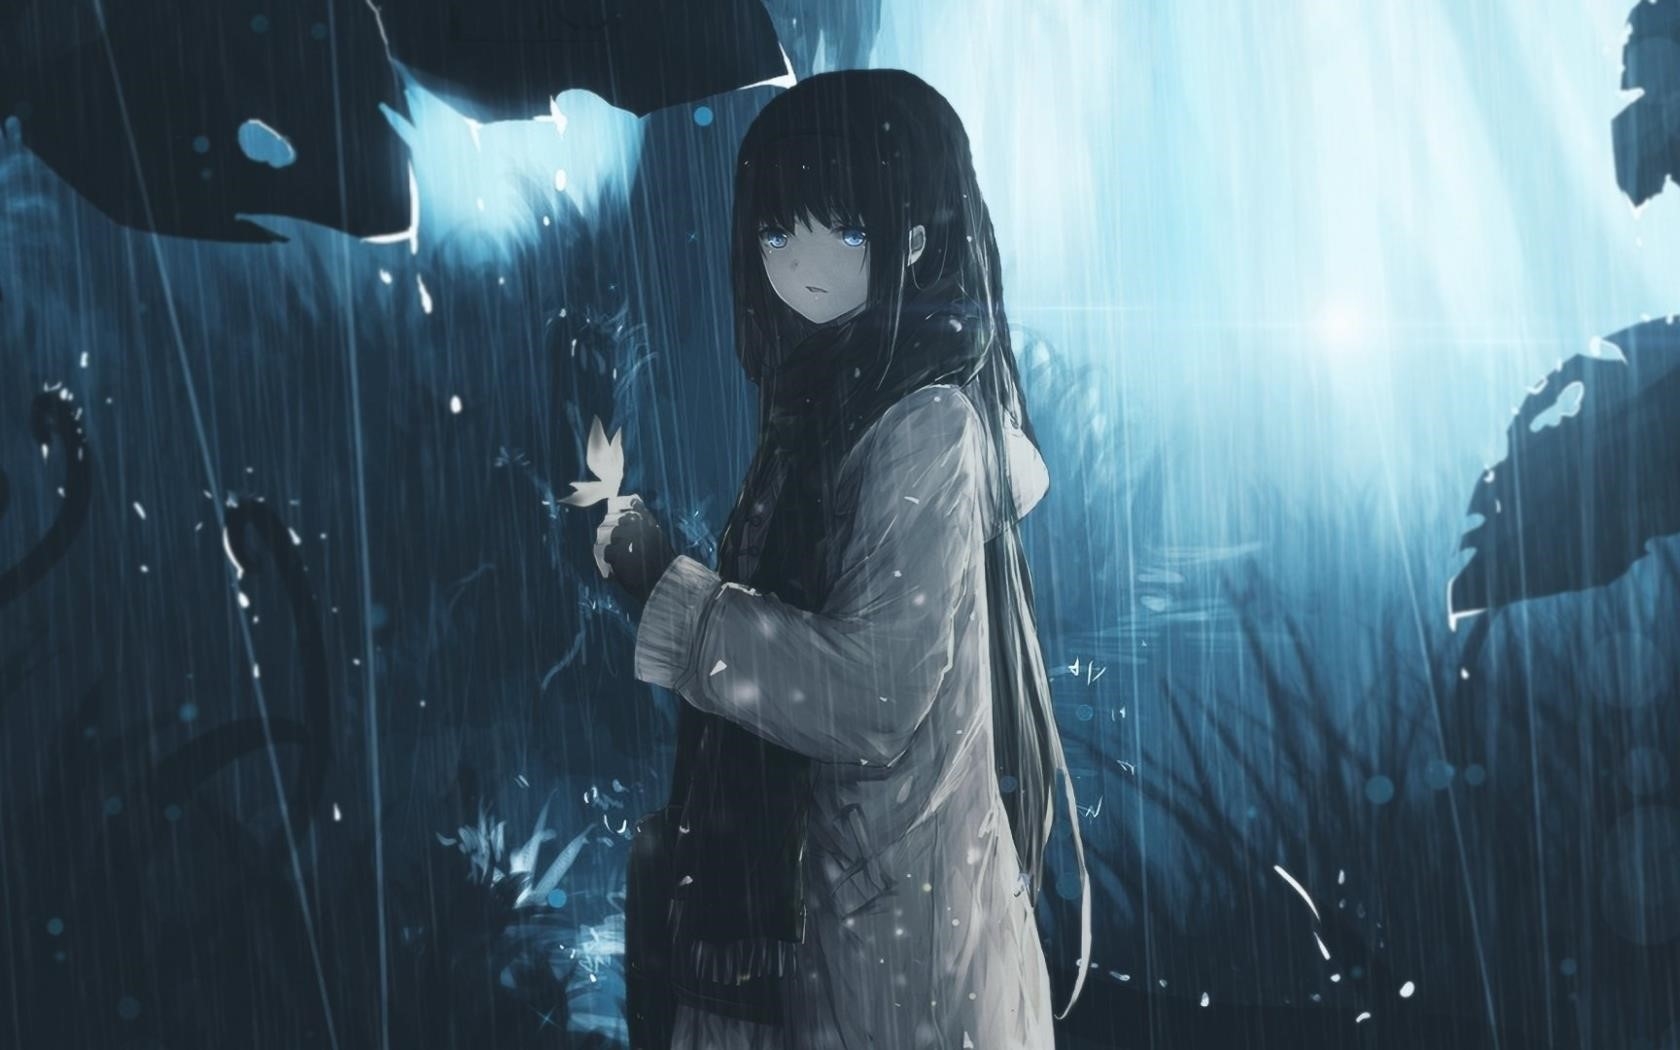 Ảnh anime khóc trong mưa thể hiện sự cảm xúc buồn bã và đau khổ của nhân vật, tạo nên một hình ảnh đầy tâm trạng và đậm chất nghệ thuật.